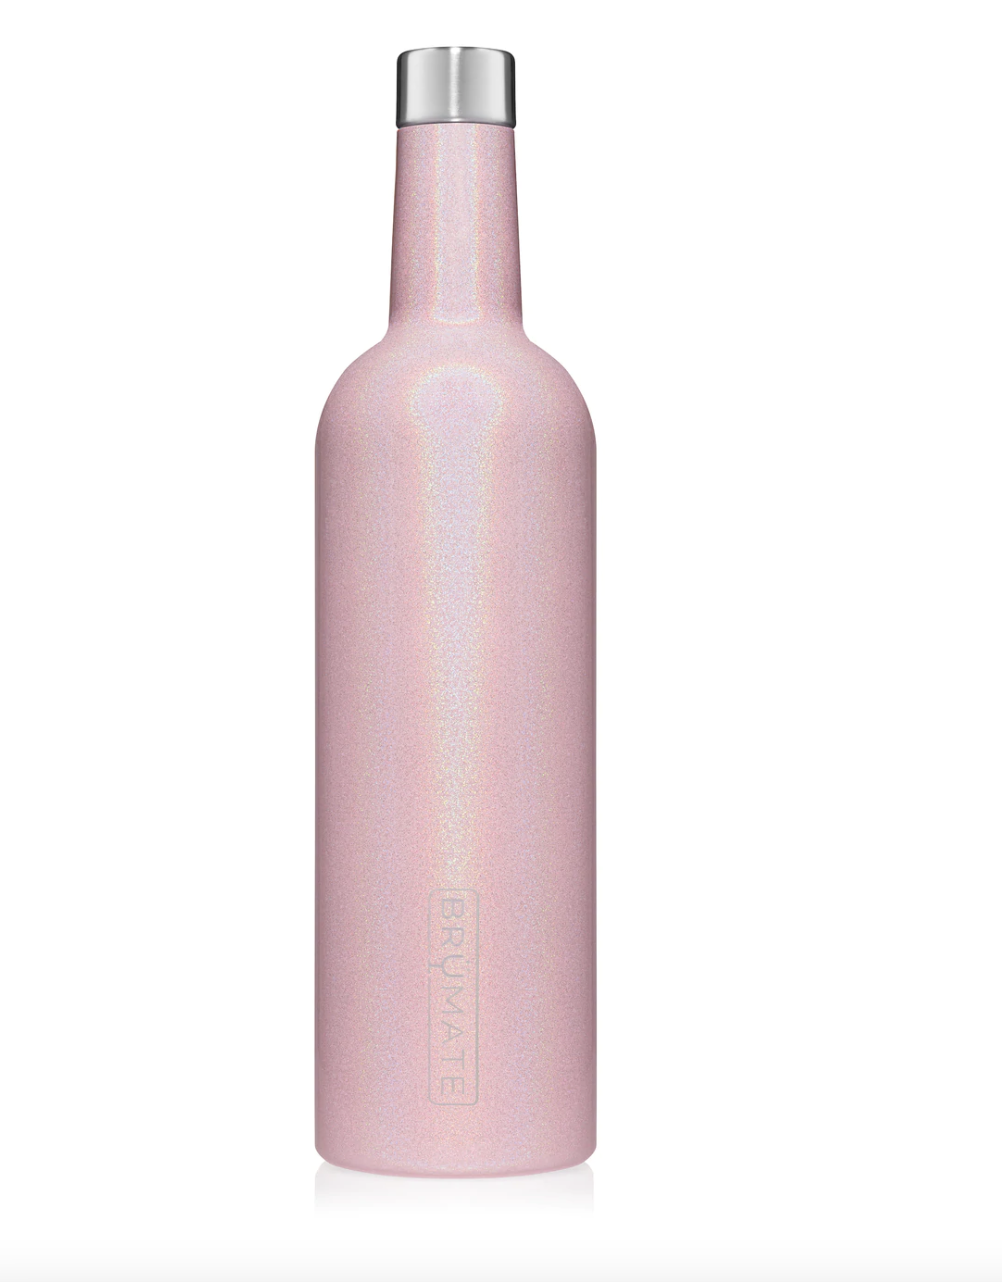 Brumate MultiShaker Blender Bottle - Midnight Camo - 26 oz